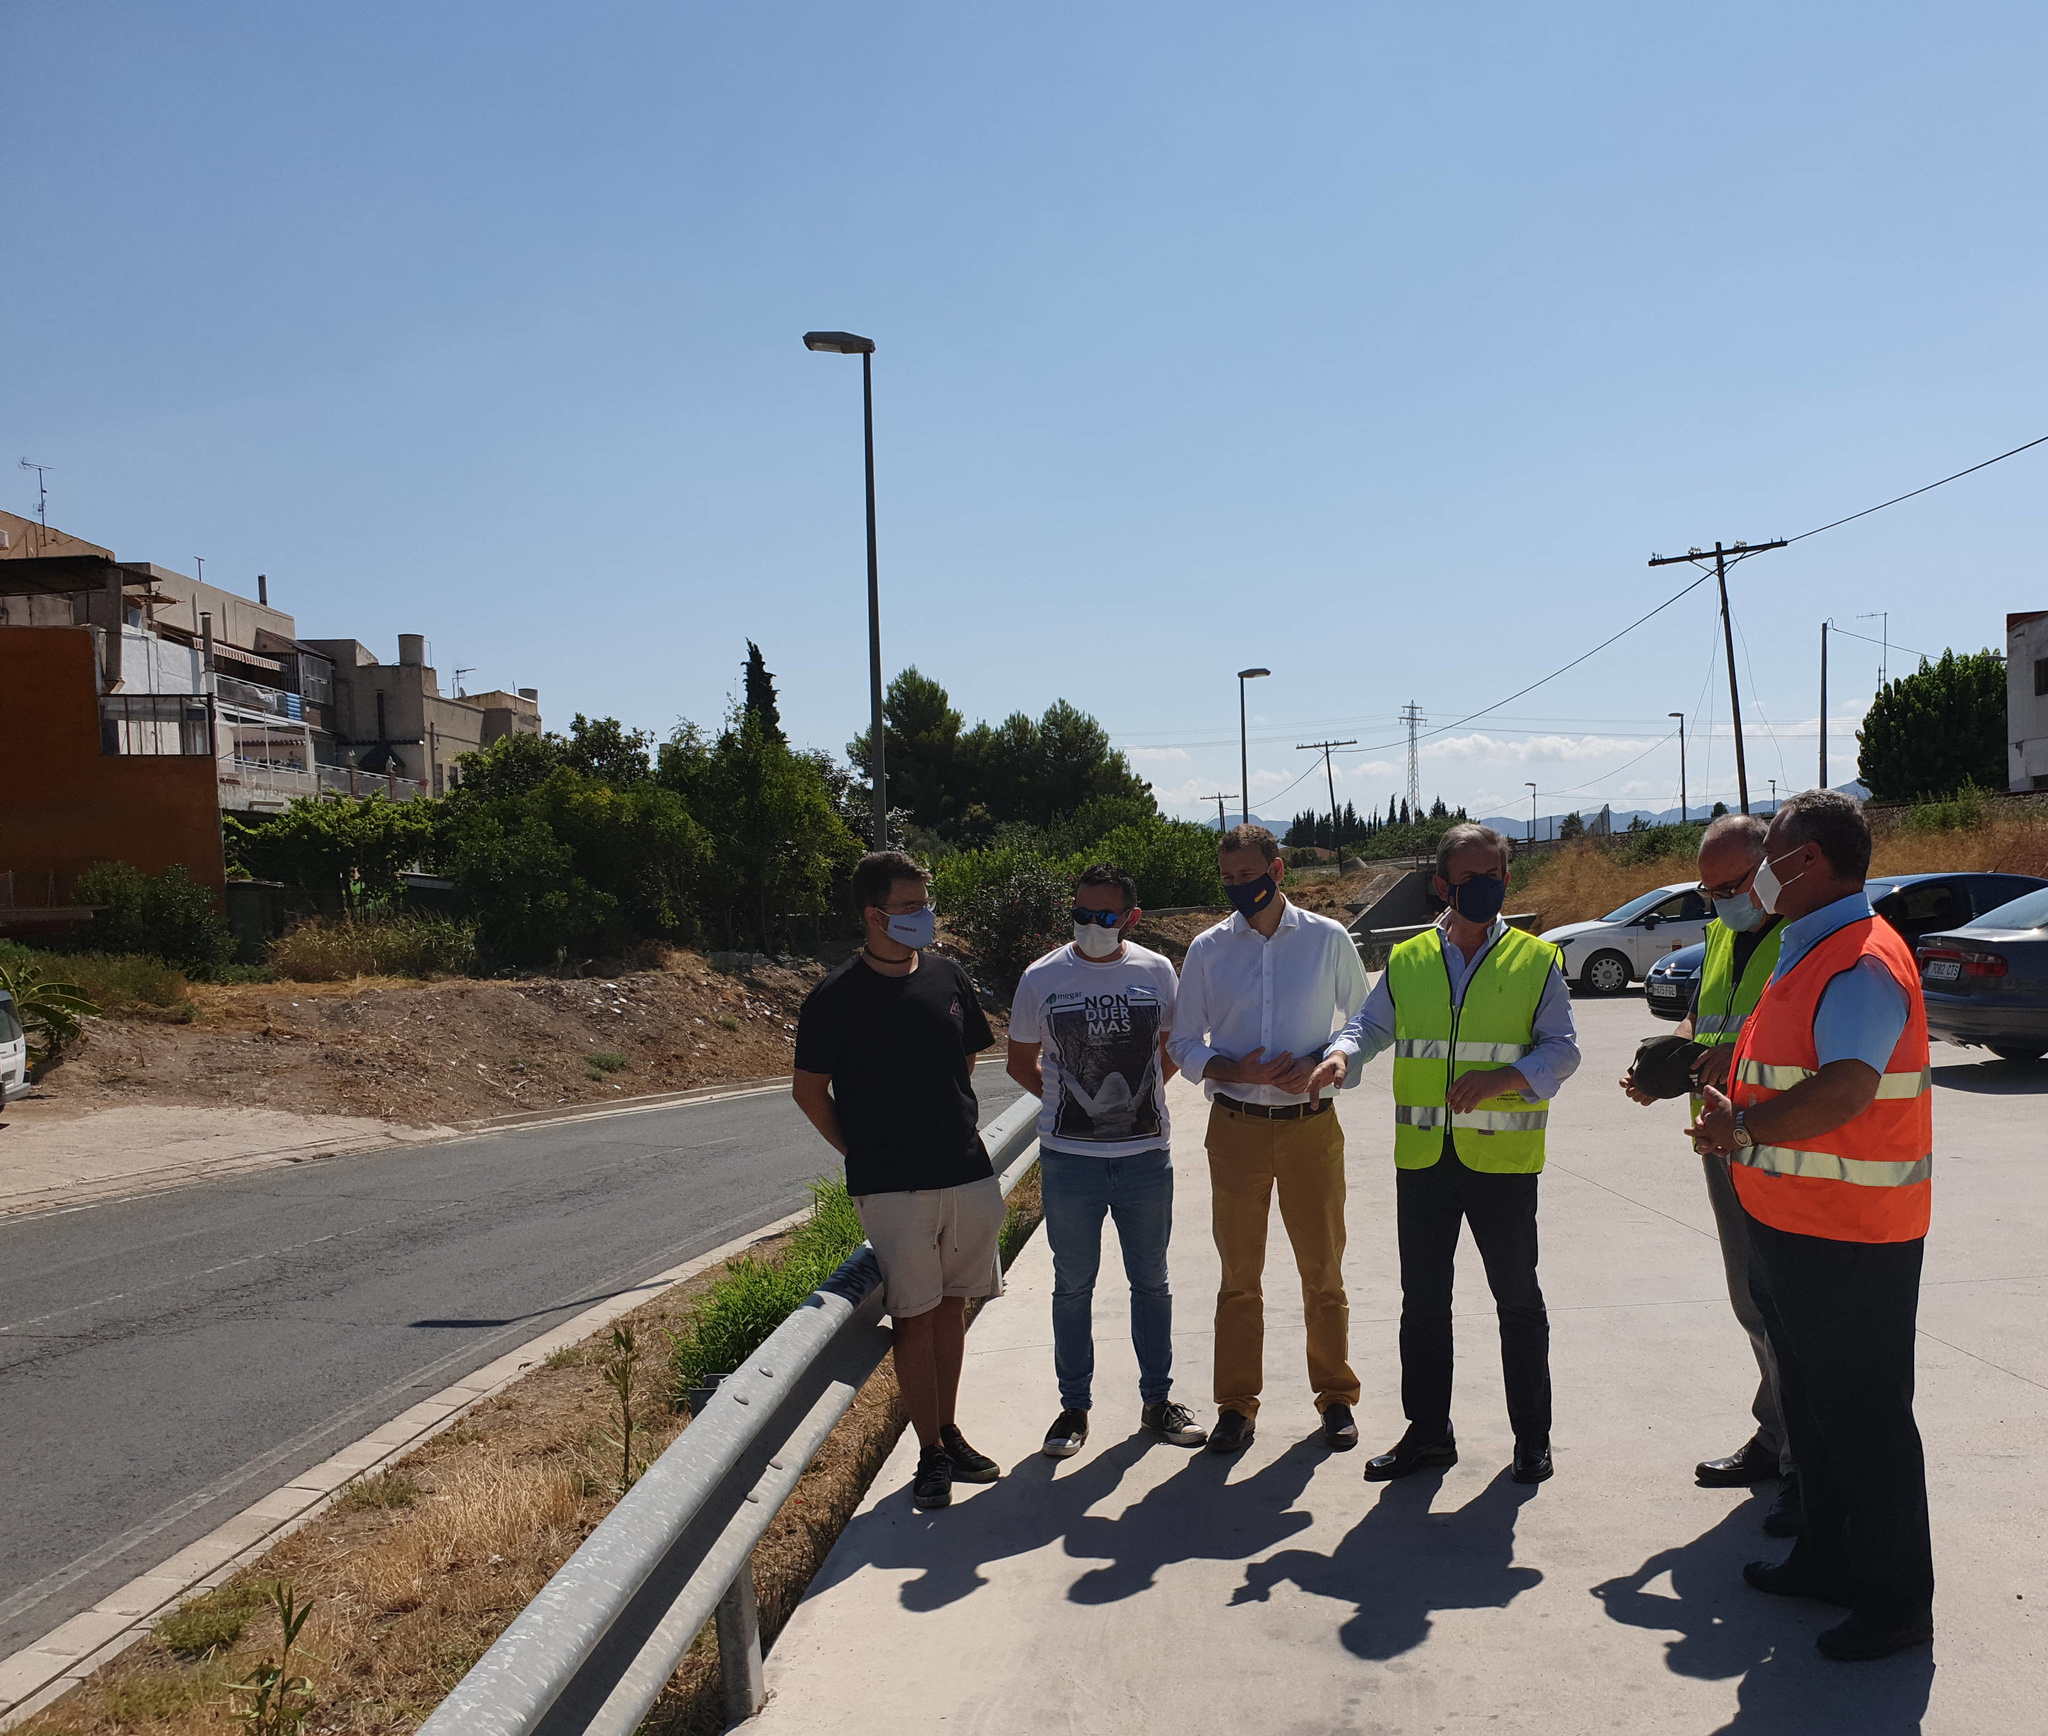 El director general de Carreteras, José Antonio Fernández Lladó, durante su visita a las actuaciones de limpieza y siega en las carreteras de la pedanía de Nonduermas de Murcia